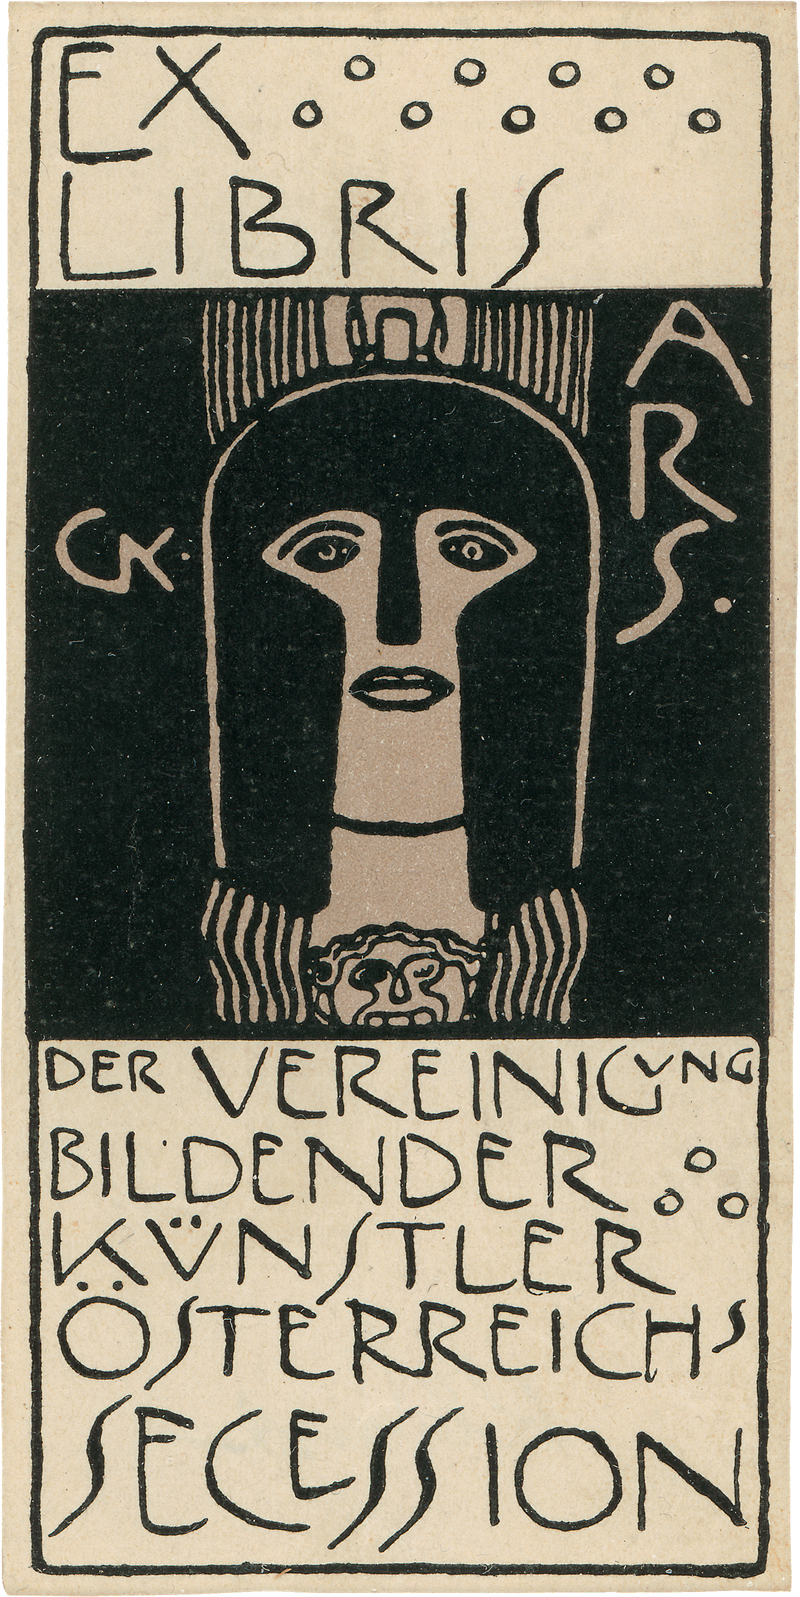 Lot 8004, Auction  118, Klimt, Gustav, Ex libris der Vereinigung bildender Künstler Österreichs Secession